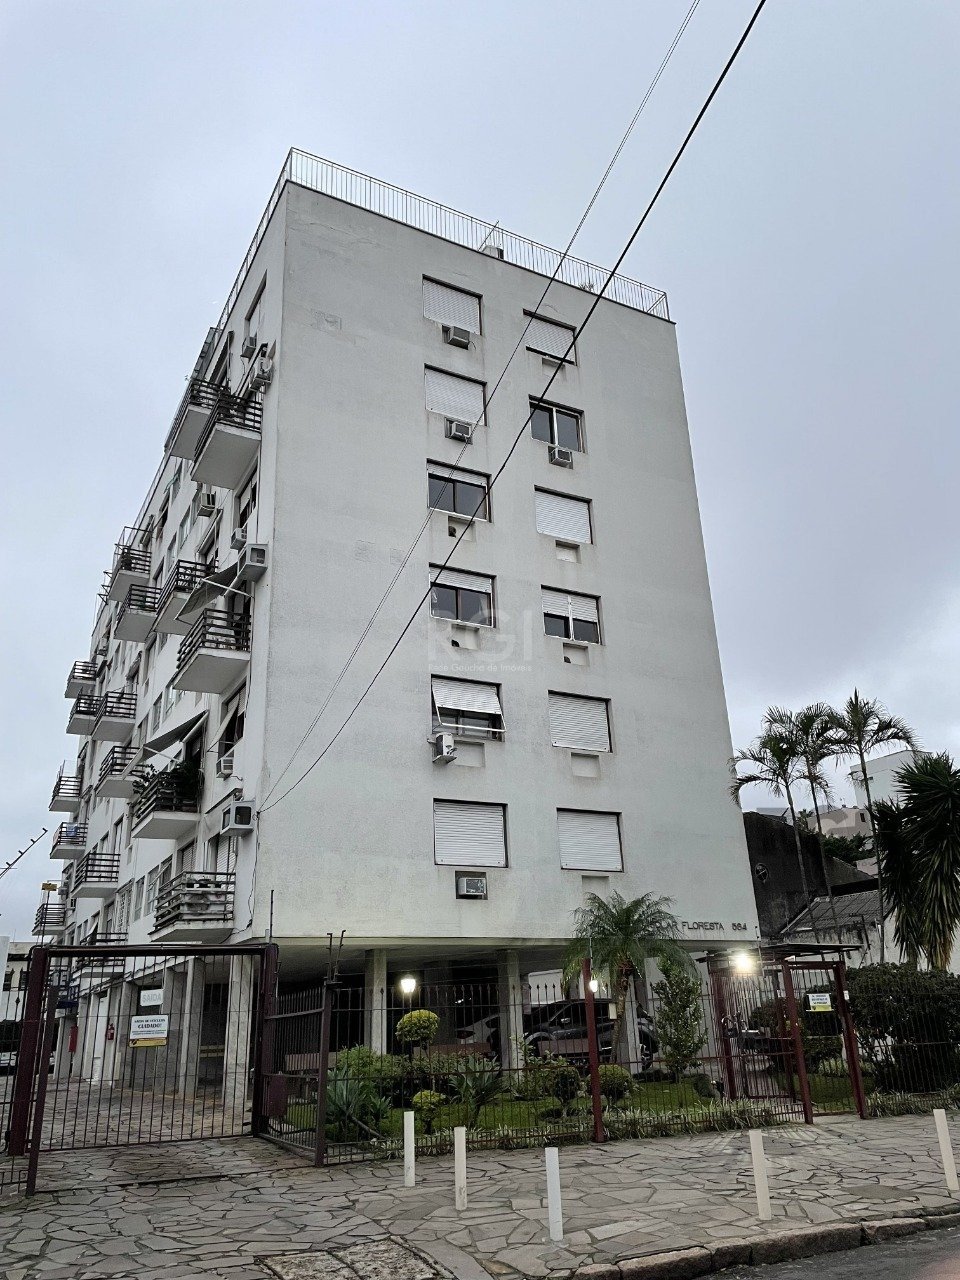 Apartamento com 87m², 3 dormitórios no bairro Floresta em Porto Alegre para Comprar